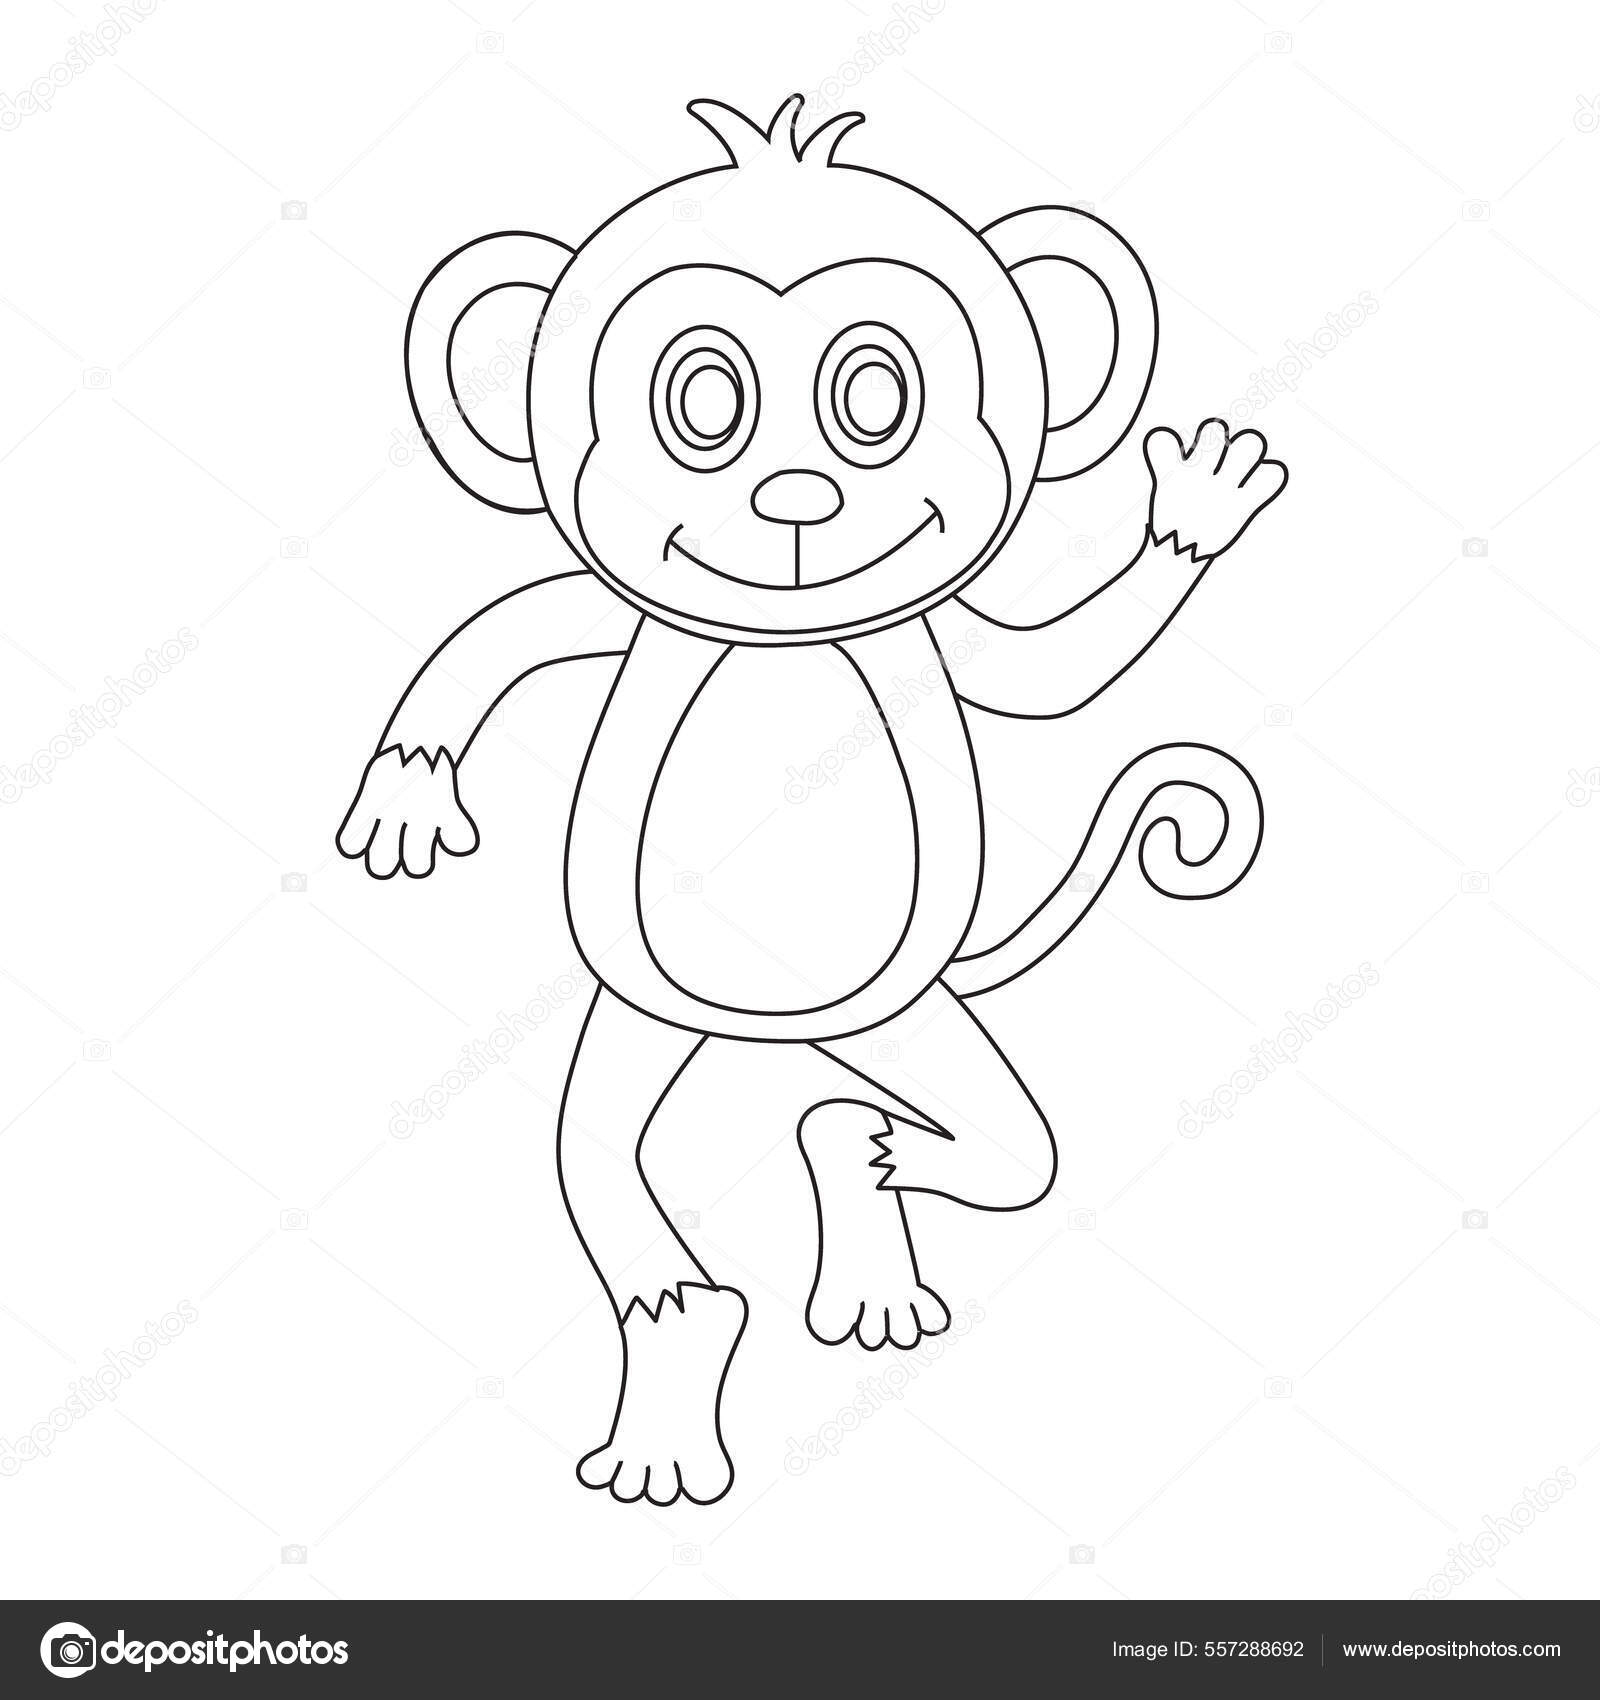 https://st.depositphotos.com/64586708/55728/v/1600/depositphotos_557288692-stock-illustration-cute-little-monkey-outline-coloring.jpg